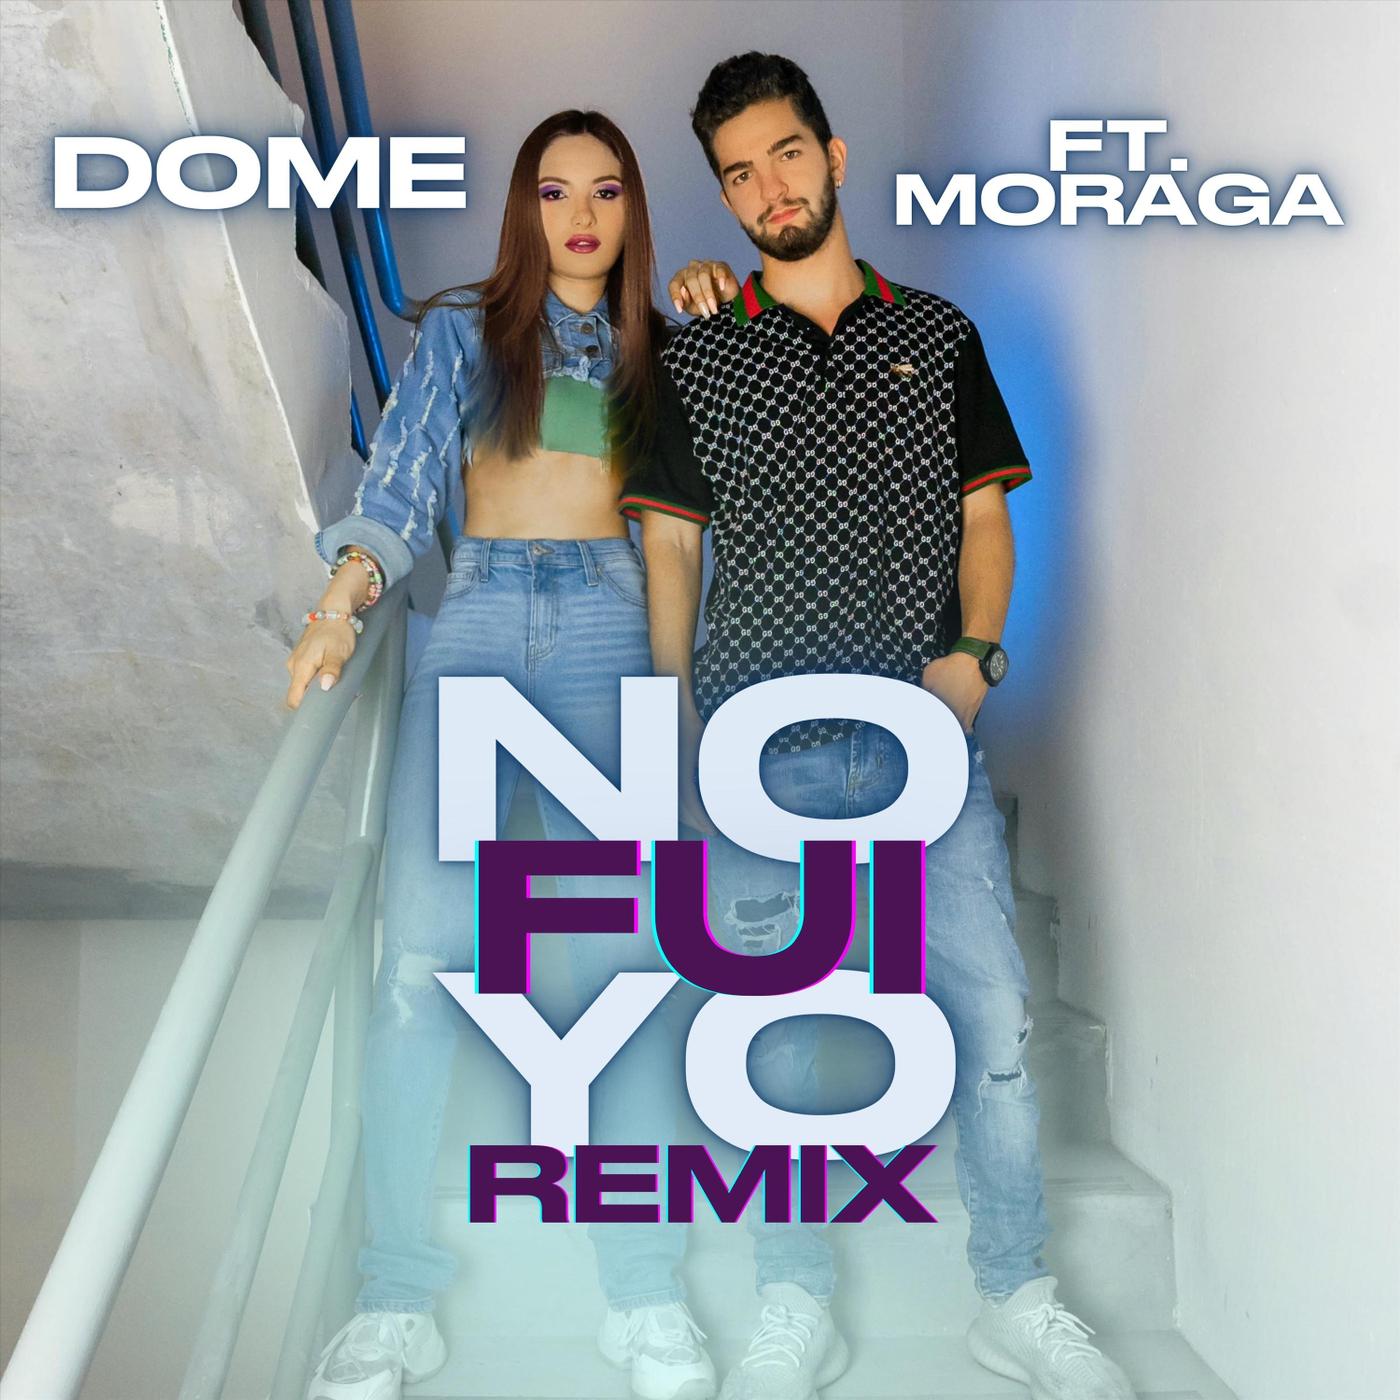 Dome - No Fui Yo (Remix) [feat. Moraga]